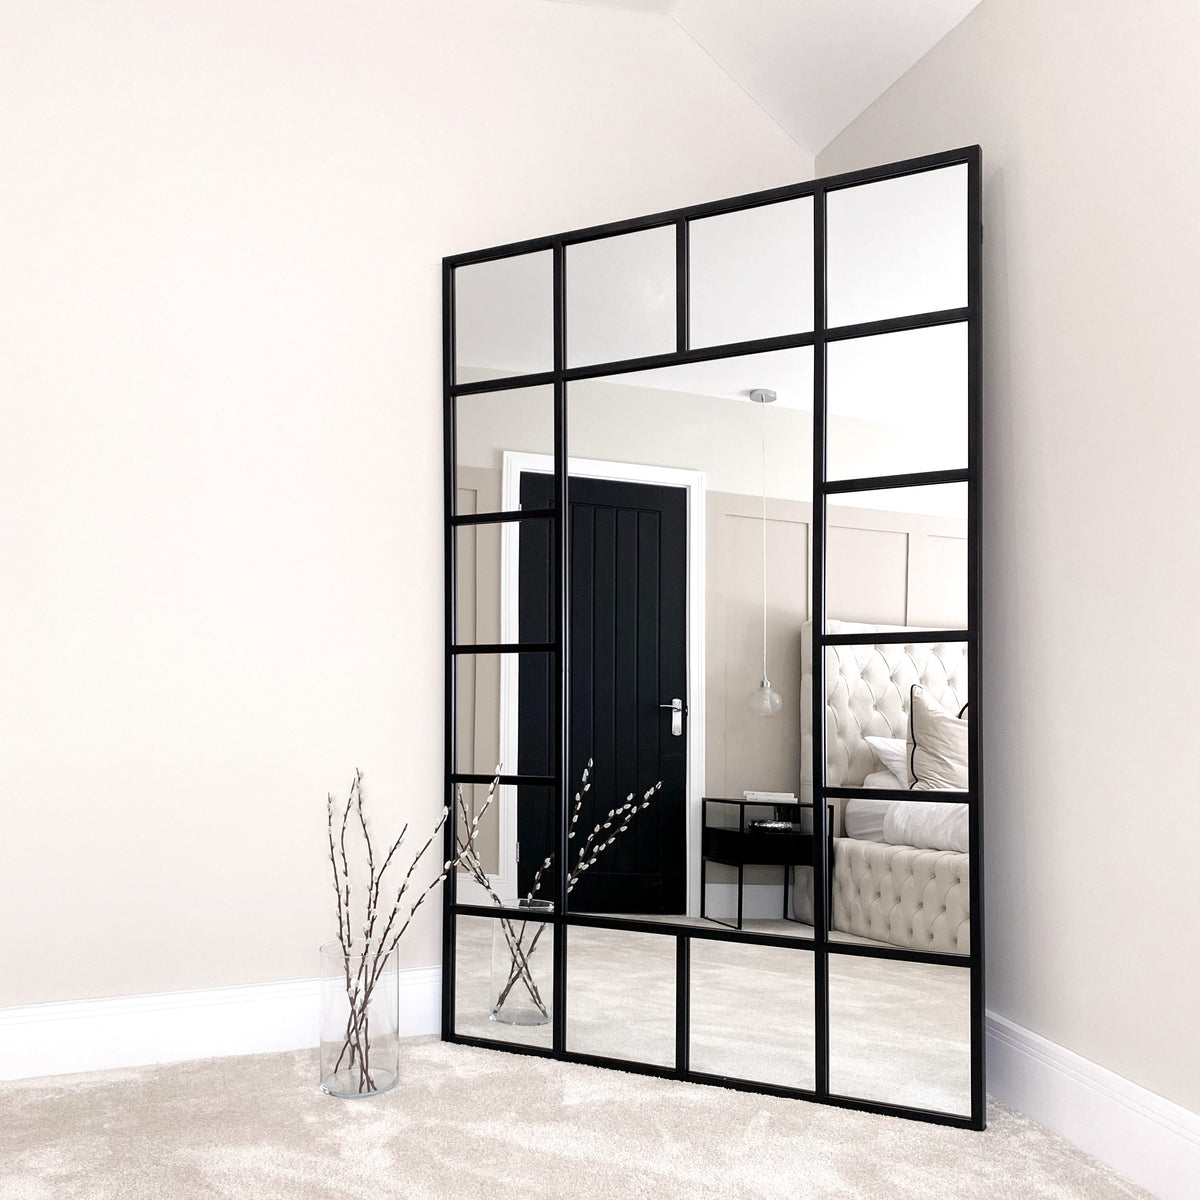 Black industrial full length metal window mirror in room corner